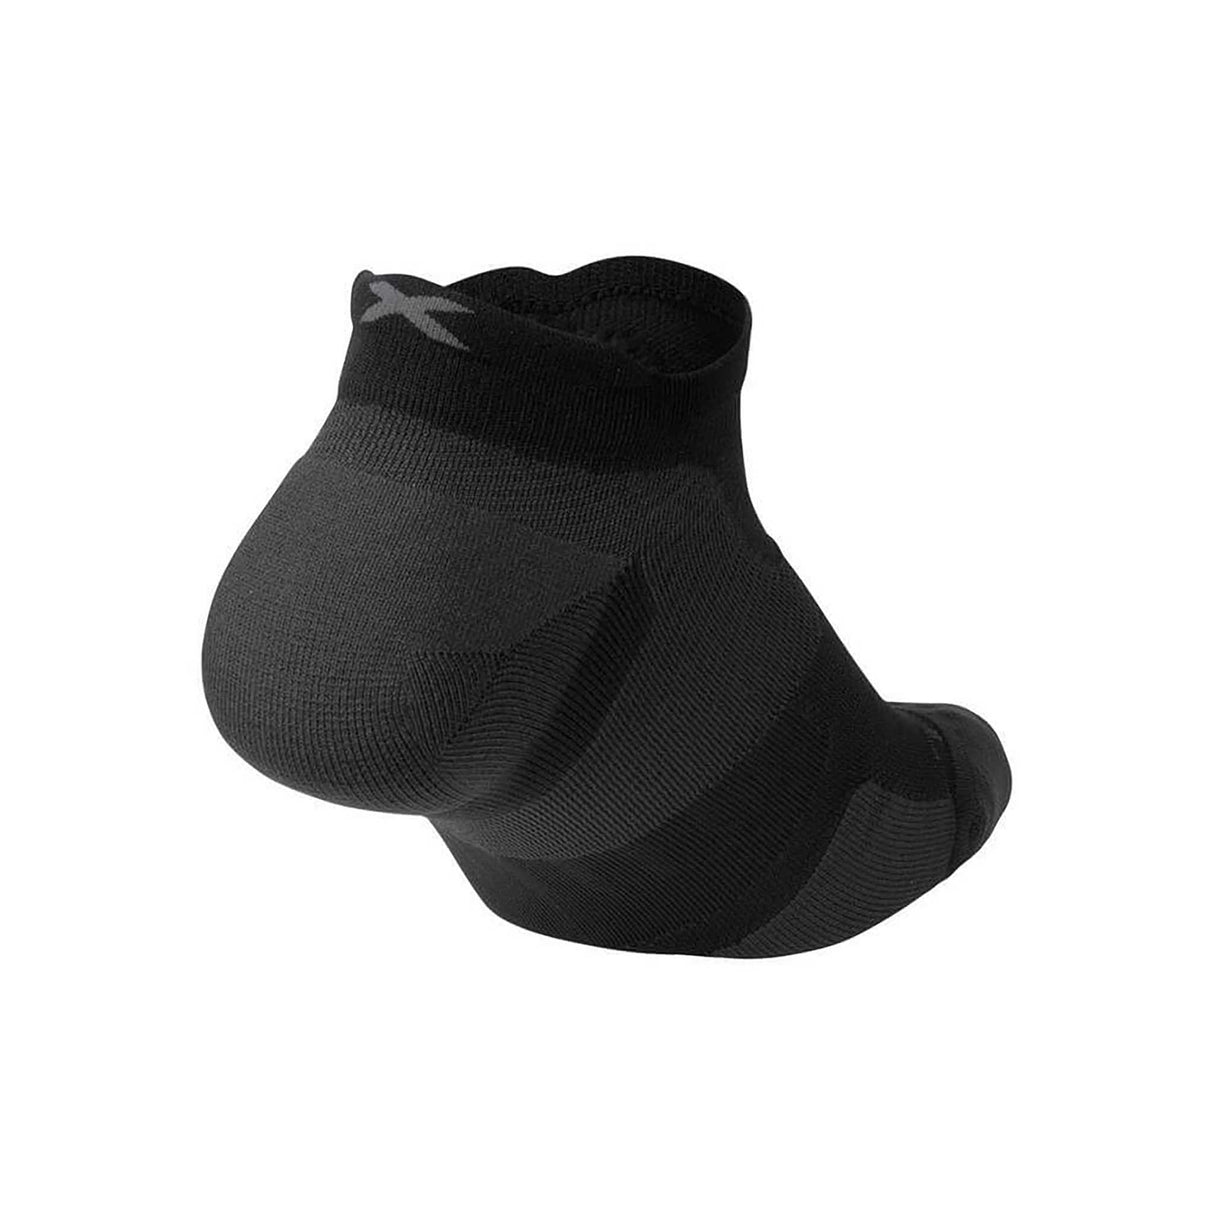 2XU Vectr Cushion chaussettes courtes de course à pied unisexe noir titane dos